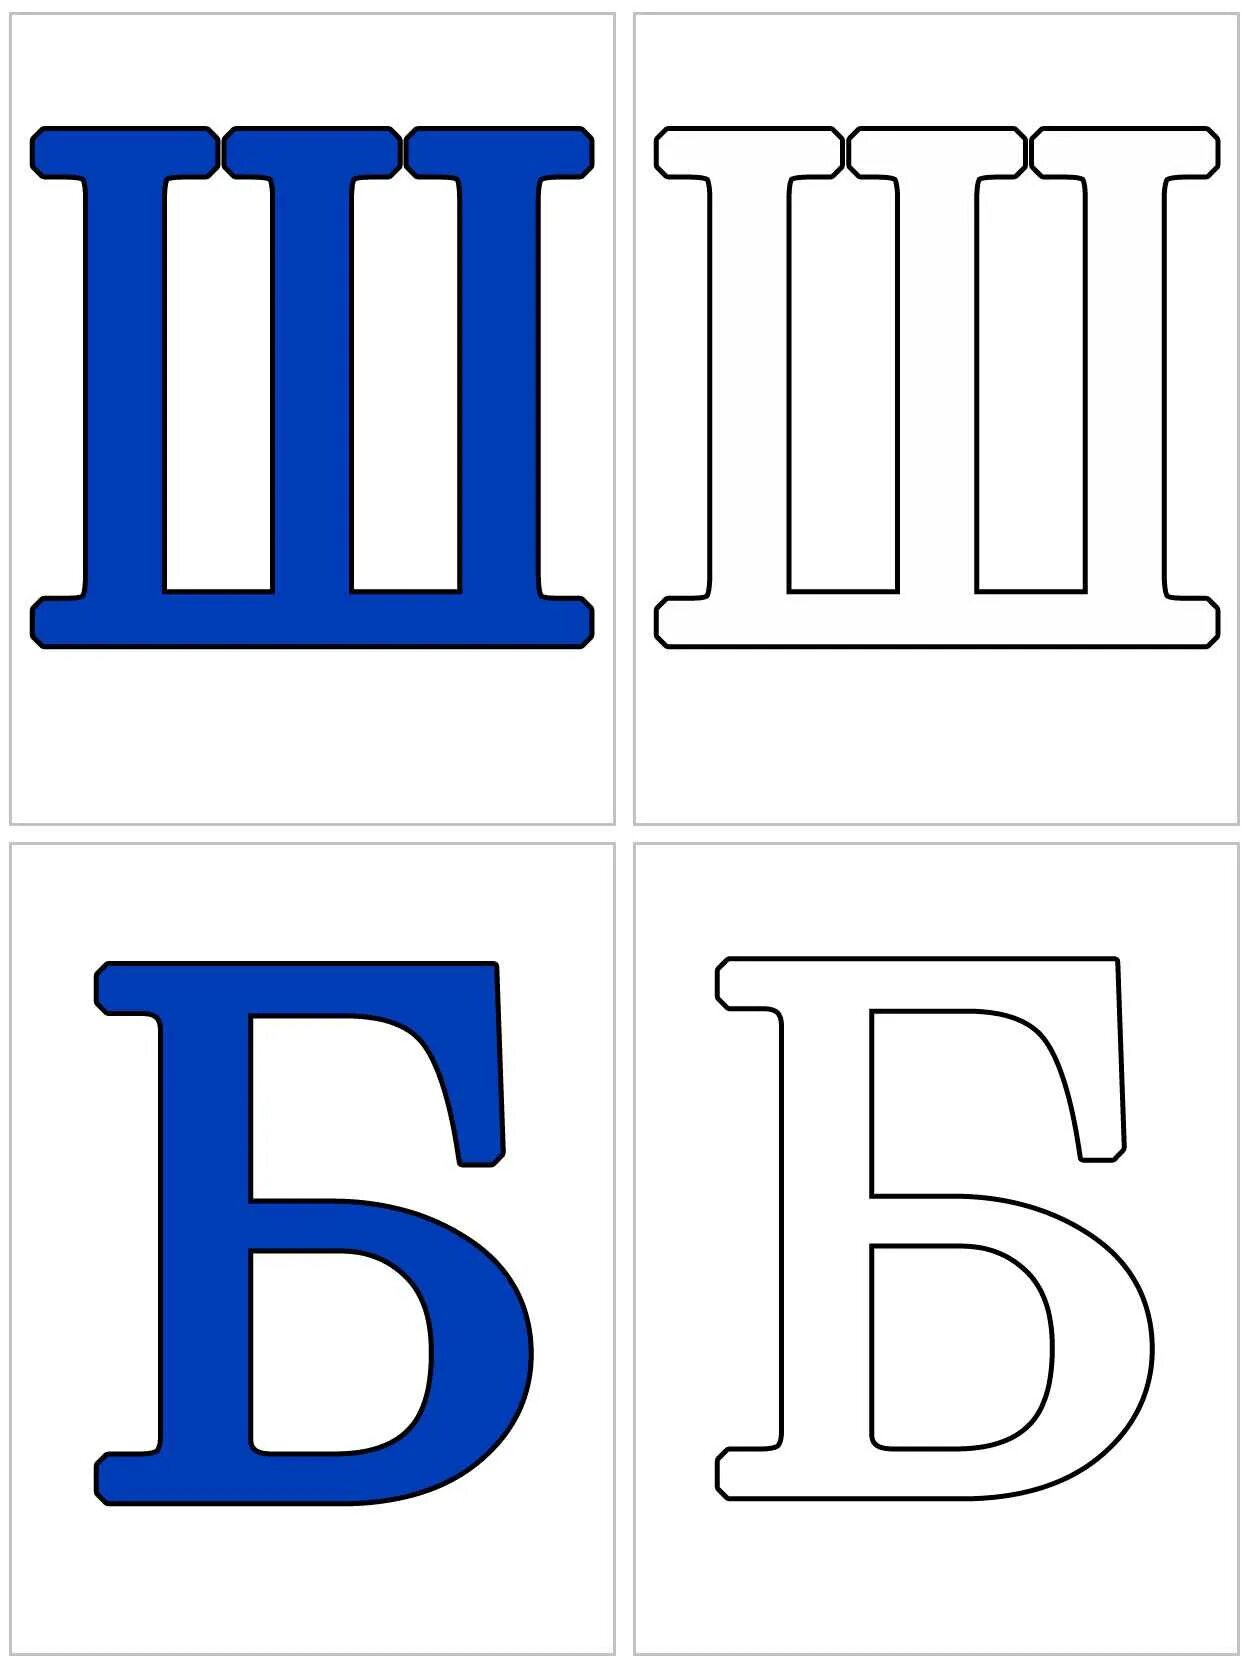 Печатные буквы алфавита. Карточки с буквами. Буквы алфавита для распечатки. Карточки с буквами русского алфавита. Буквы алфавита для распечатывания.